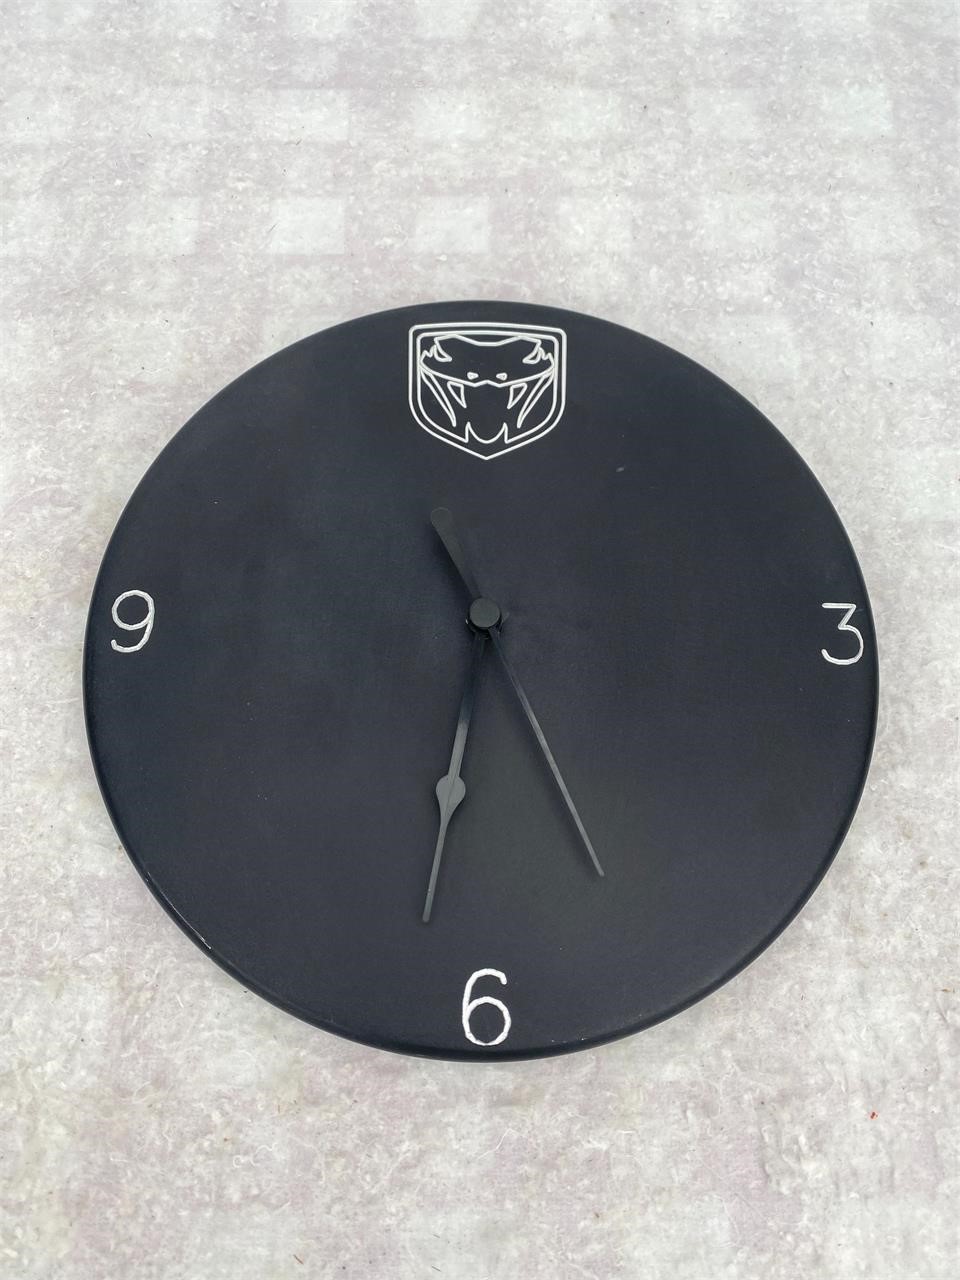 Dodge Viper Anodized Aluminum Wall Clock